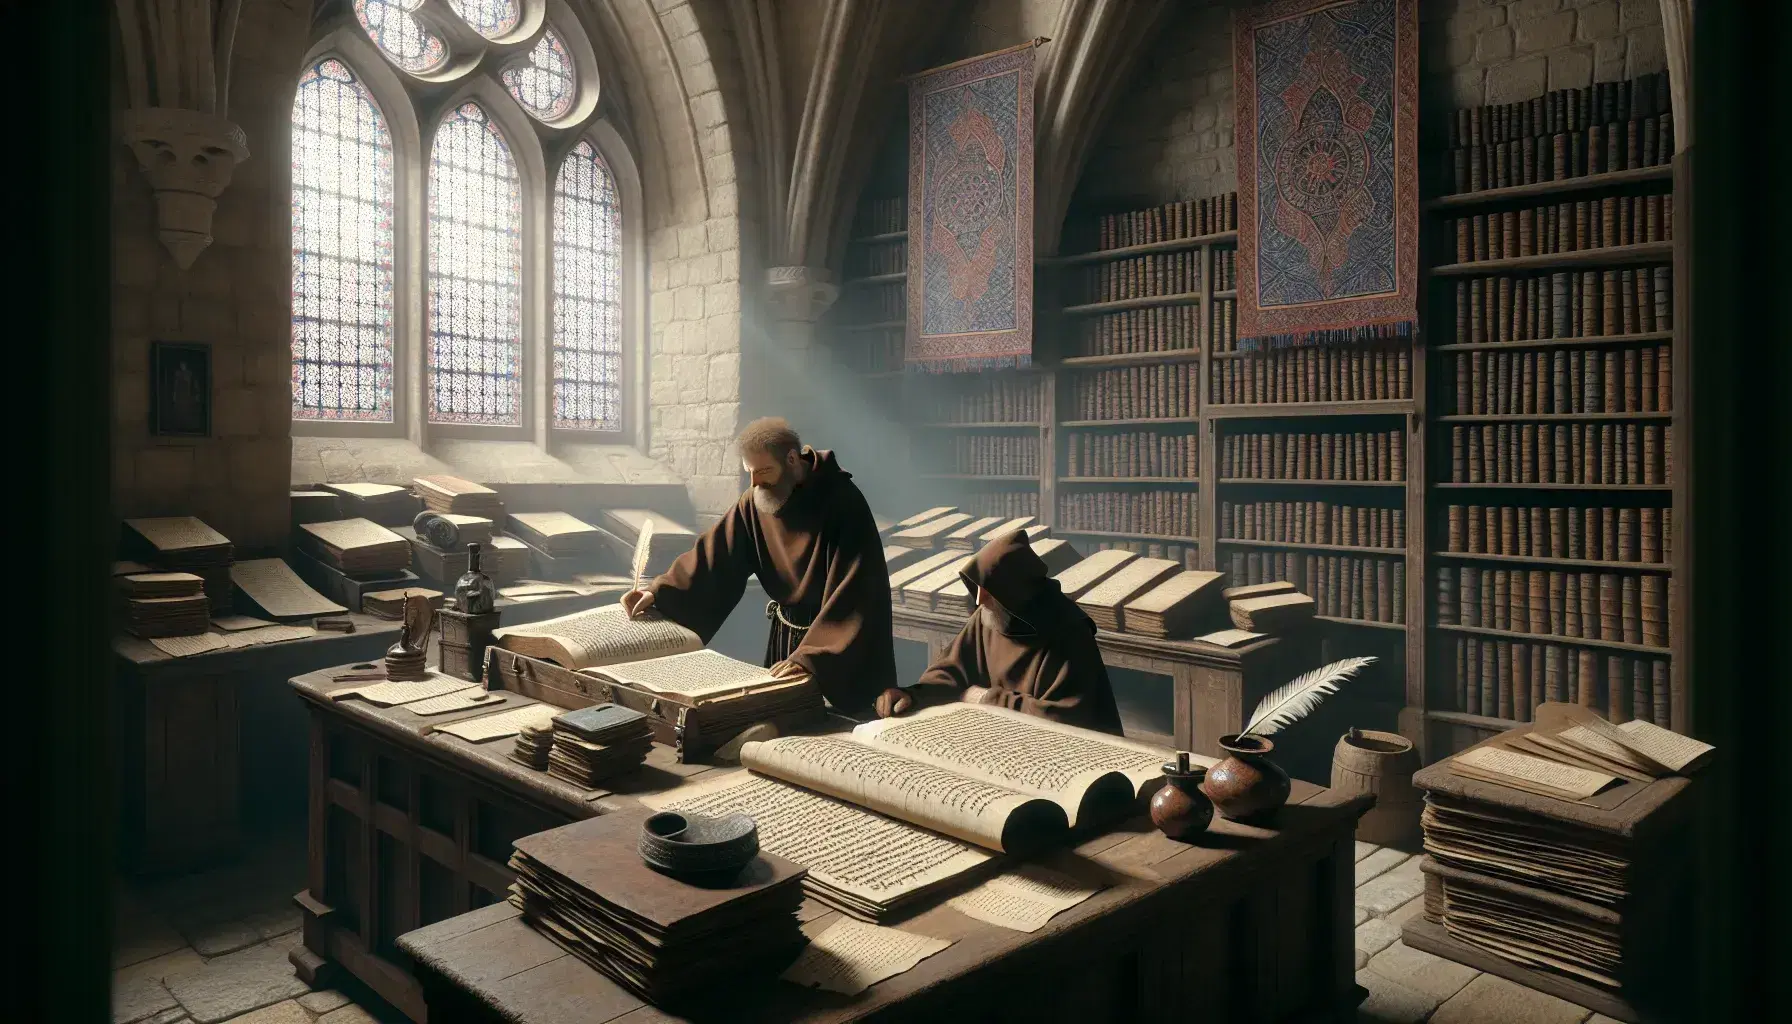 Monjes copistas trabajando en un scriptorium medieval con pergaminos, pluma de ave y tintero sobre un escritorio de madera, junto a estantes llenos de libros y un tapiz colgante.